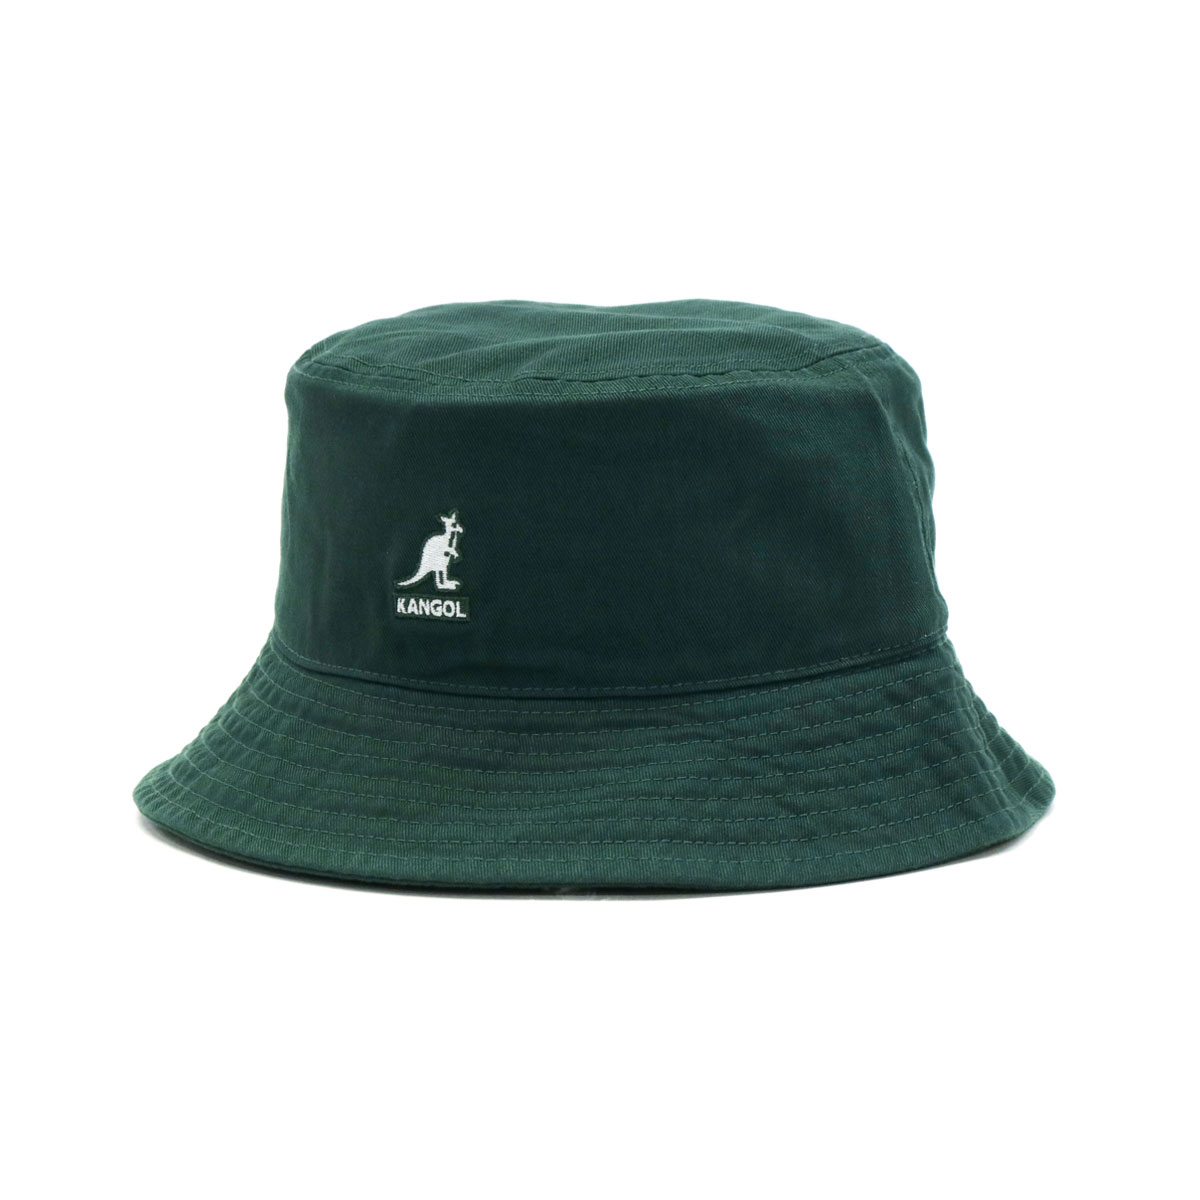 カンゴール バケットハット KANGOL Washed Bucket 帽子 バケット ハット アウトドア キャンプ メンズ レディース  100-169215 230-069602